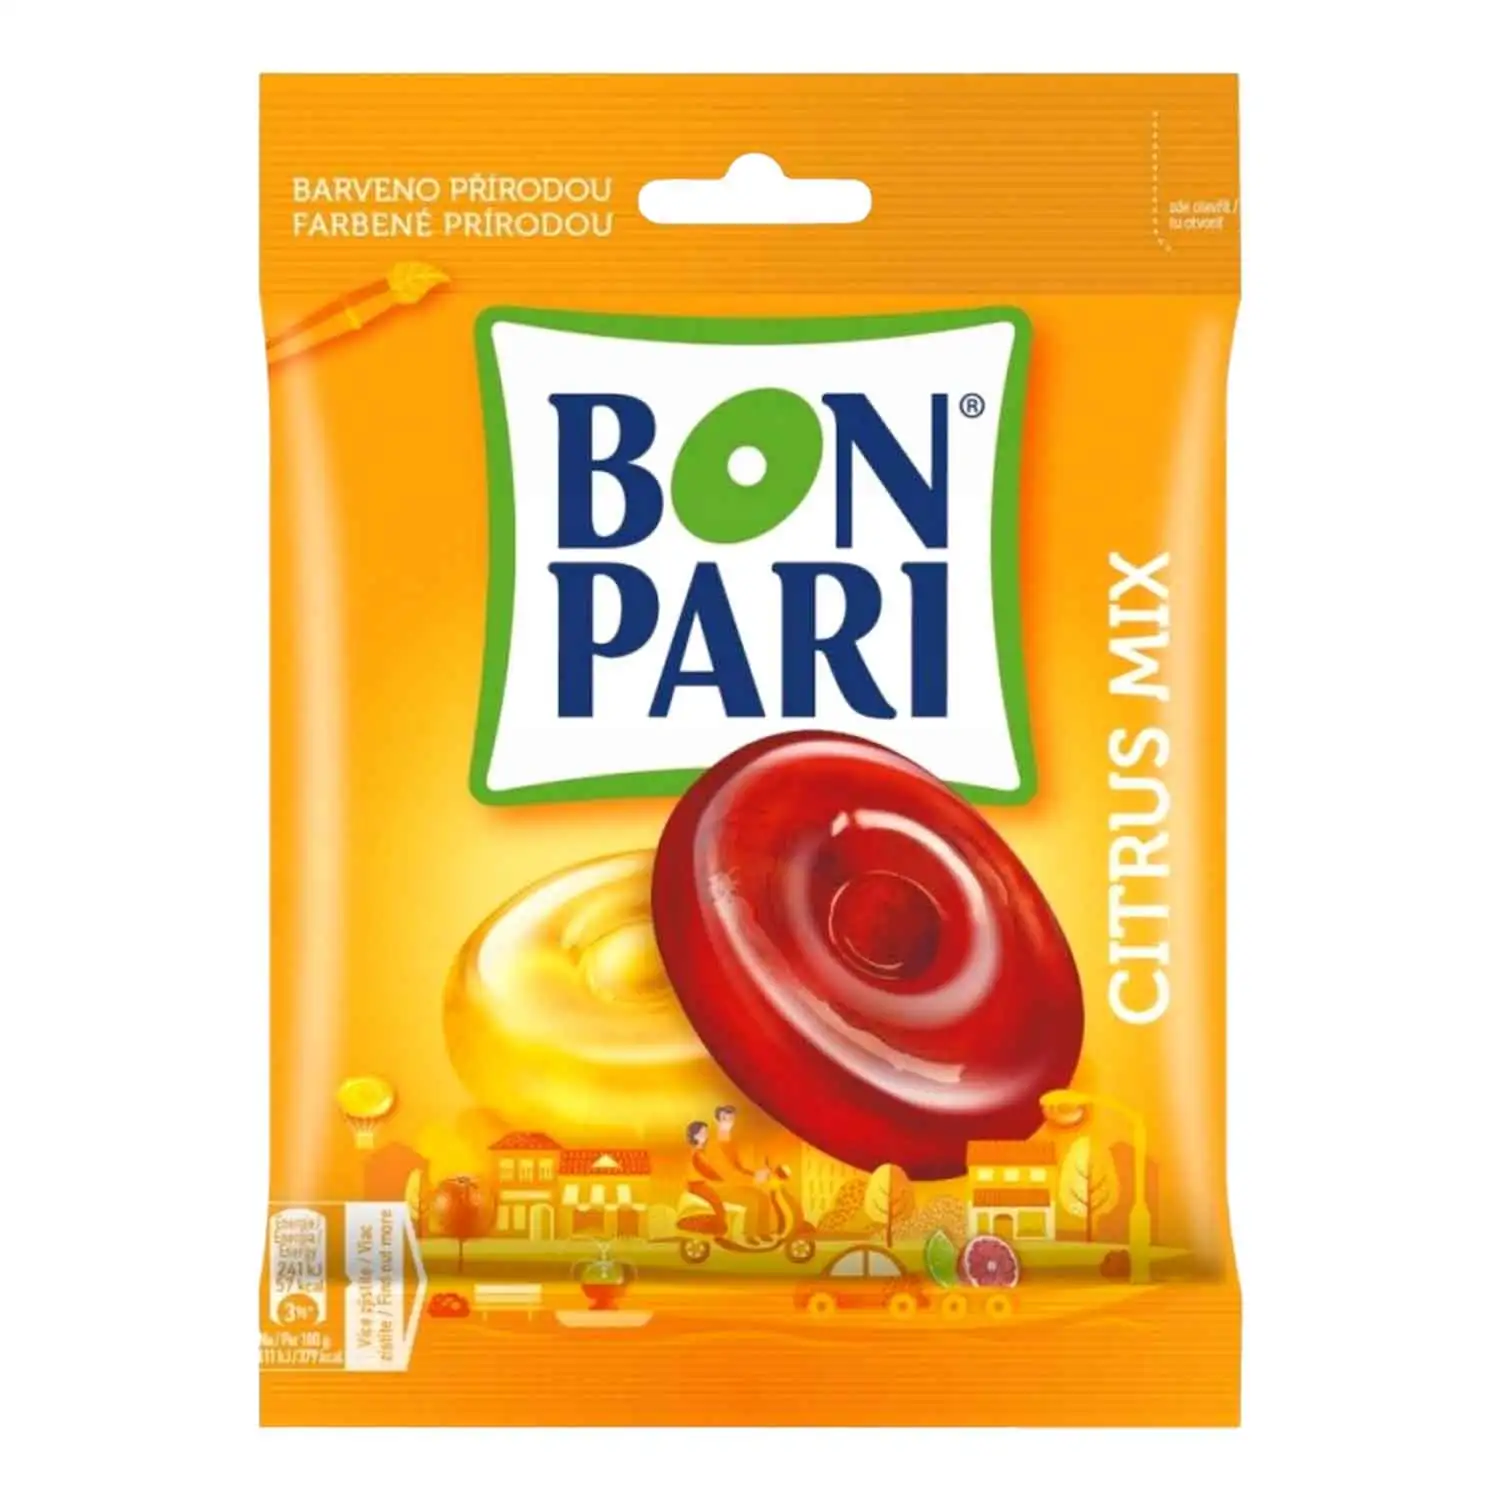 Bon Pari citrus mix 90g - Buy at Real Tobacco